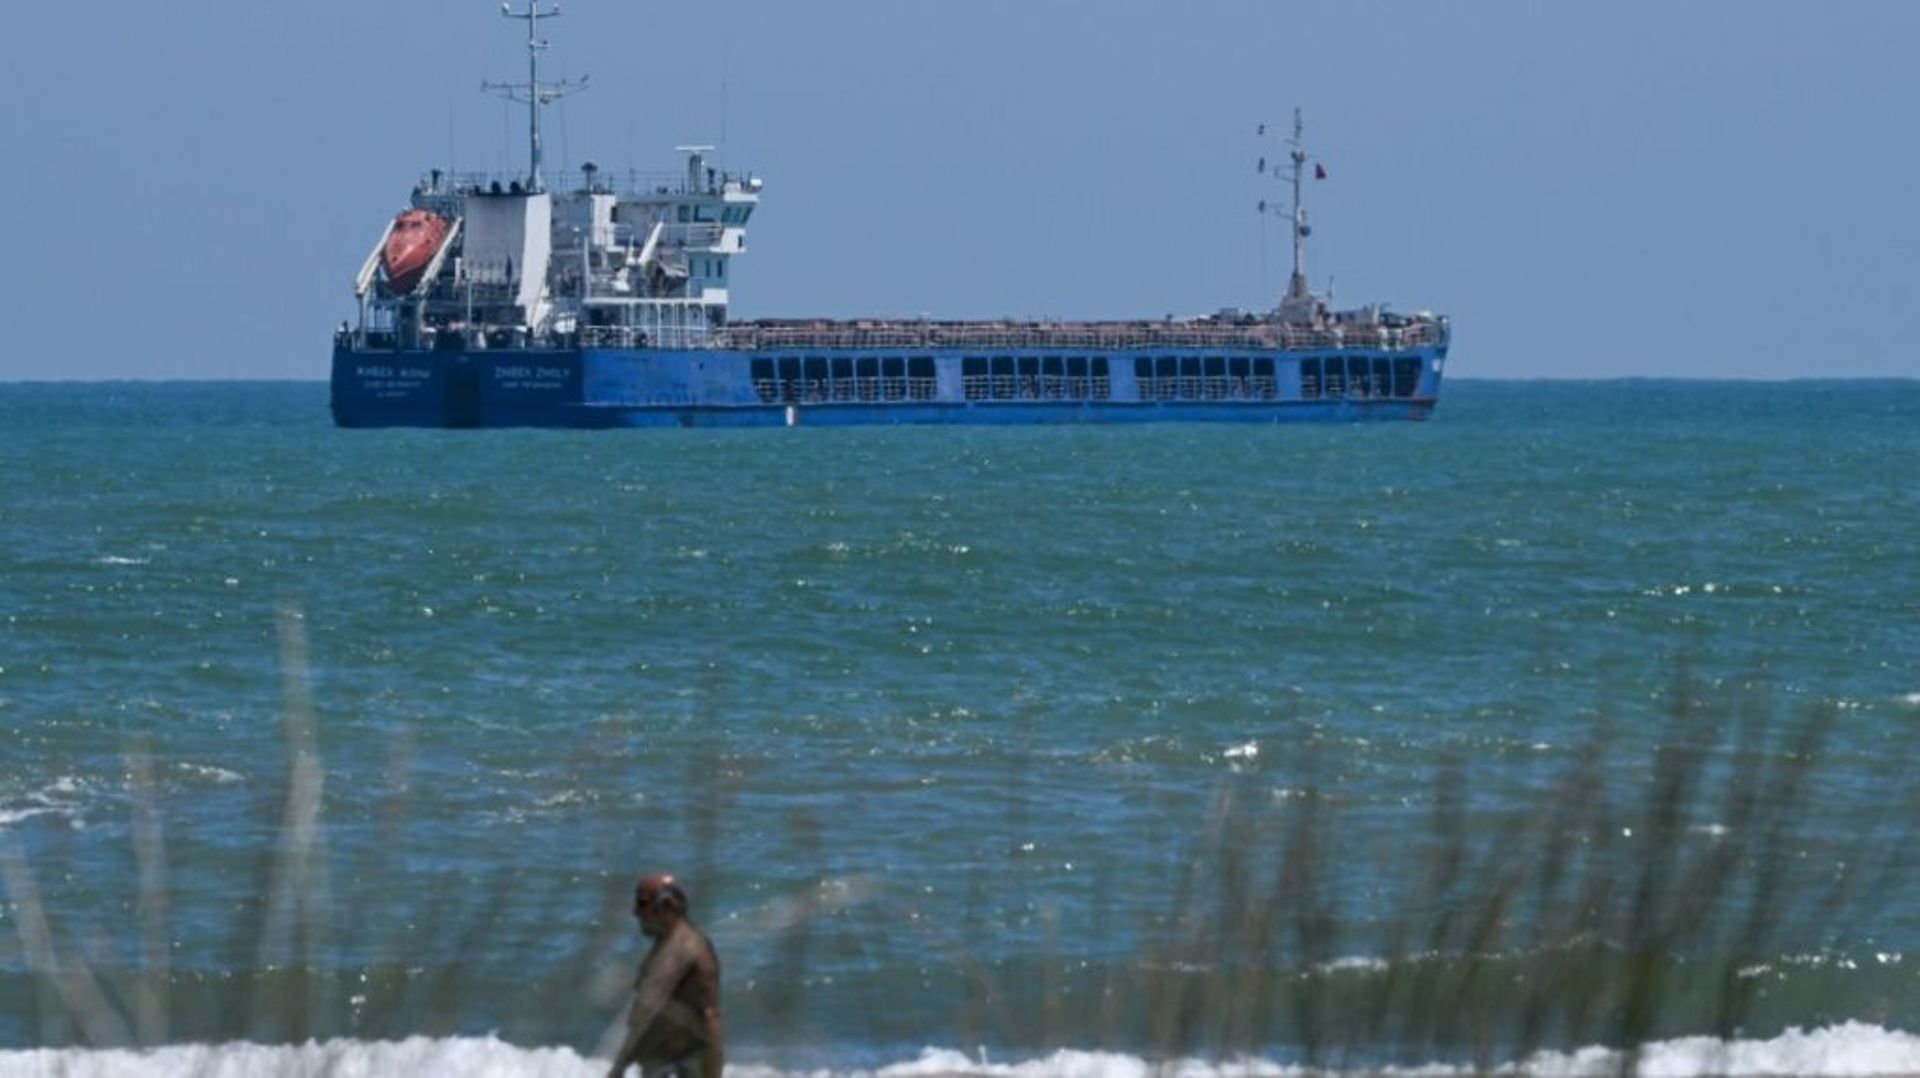 Le cargo "Zhibek Zholy" battant pavillon russe, le 5 juillet 2022 sur la côte de la mer Noire, à Sakarya, en Turquie